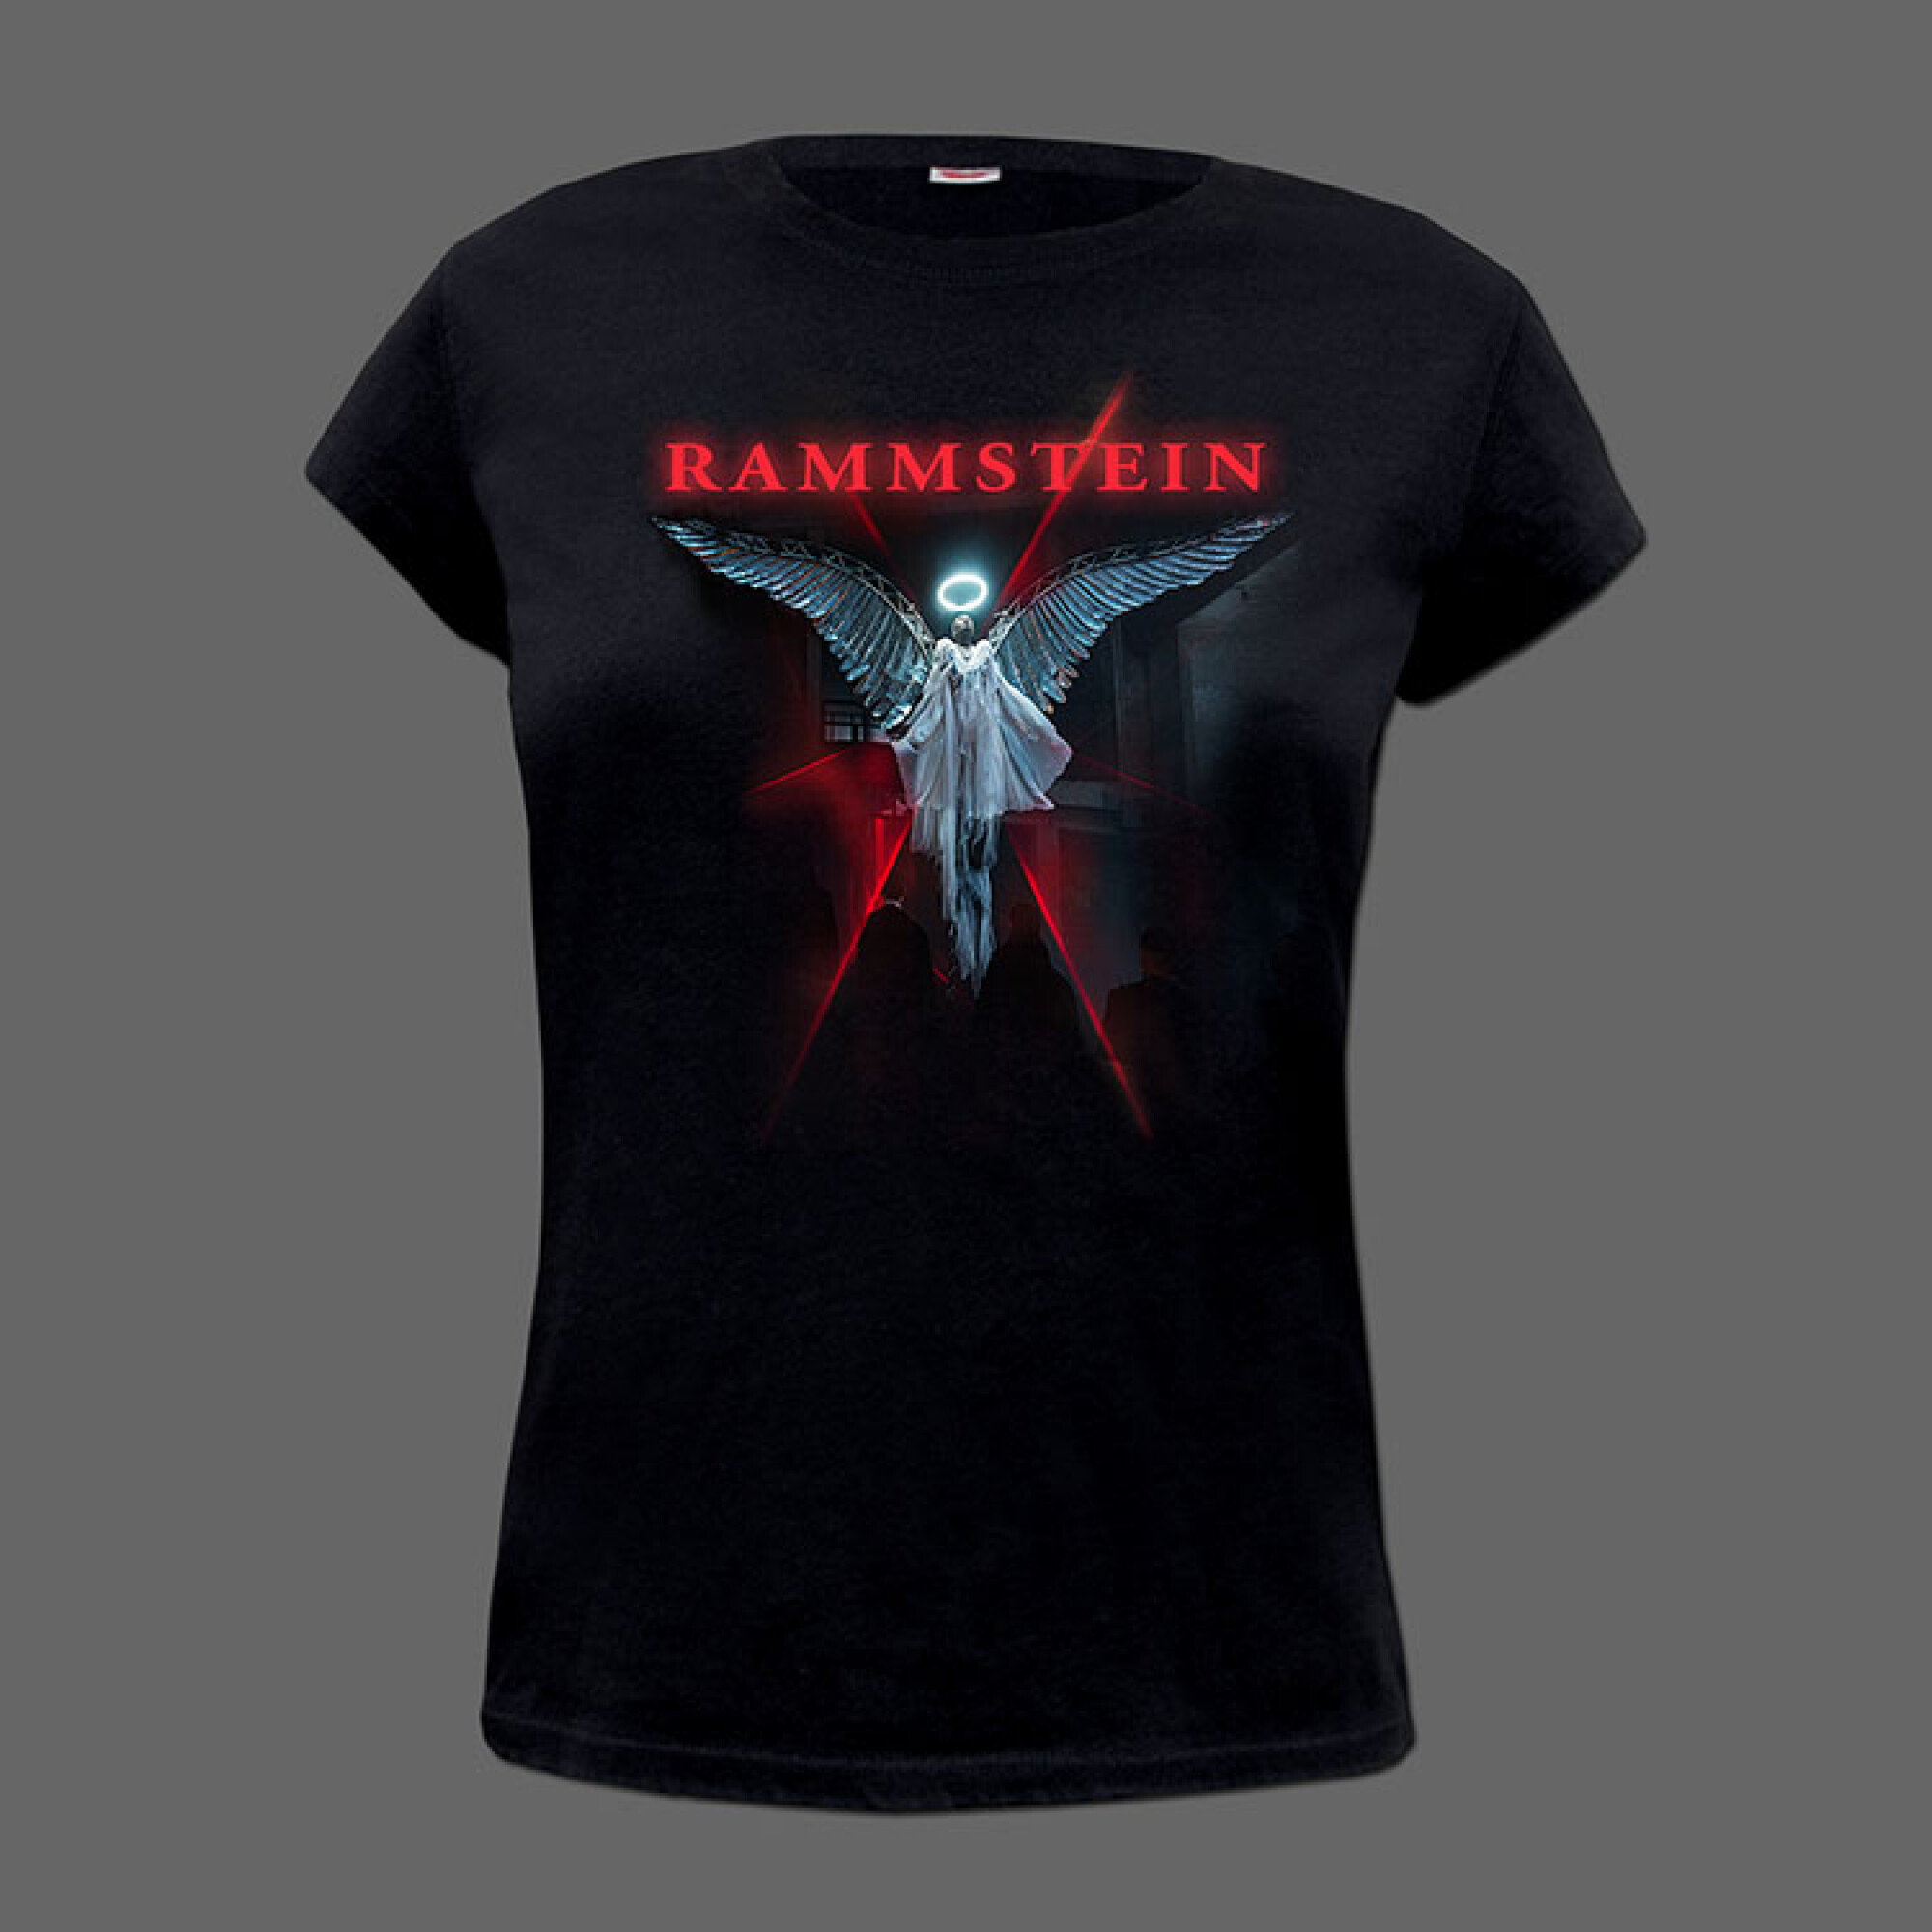 Du-Ich-Wir-Ihr, Rammstein T-Shirt